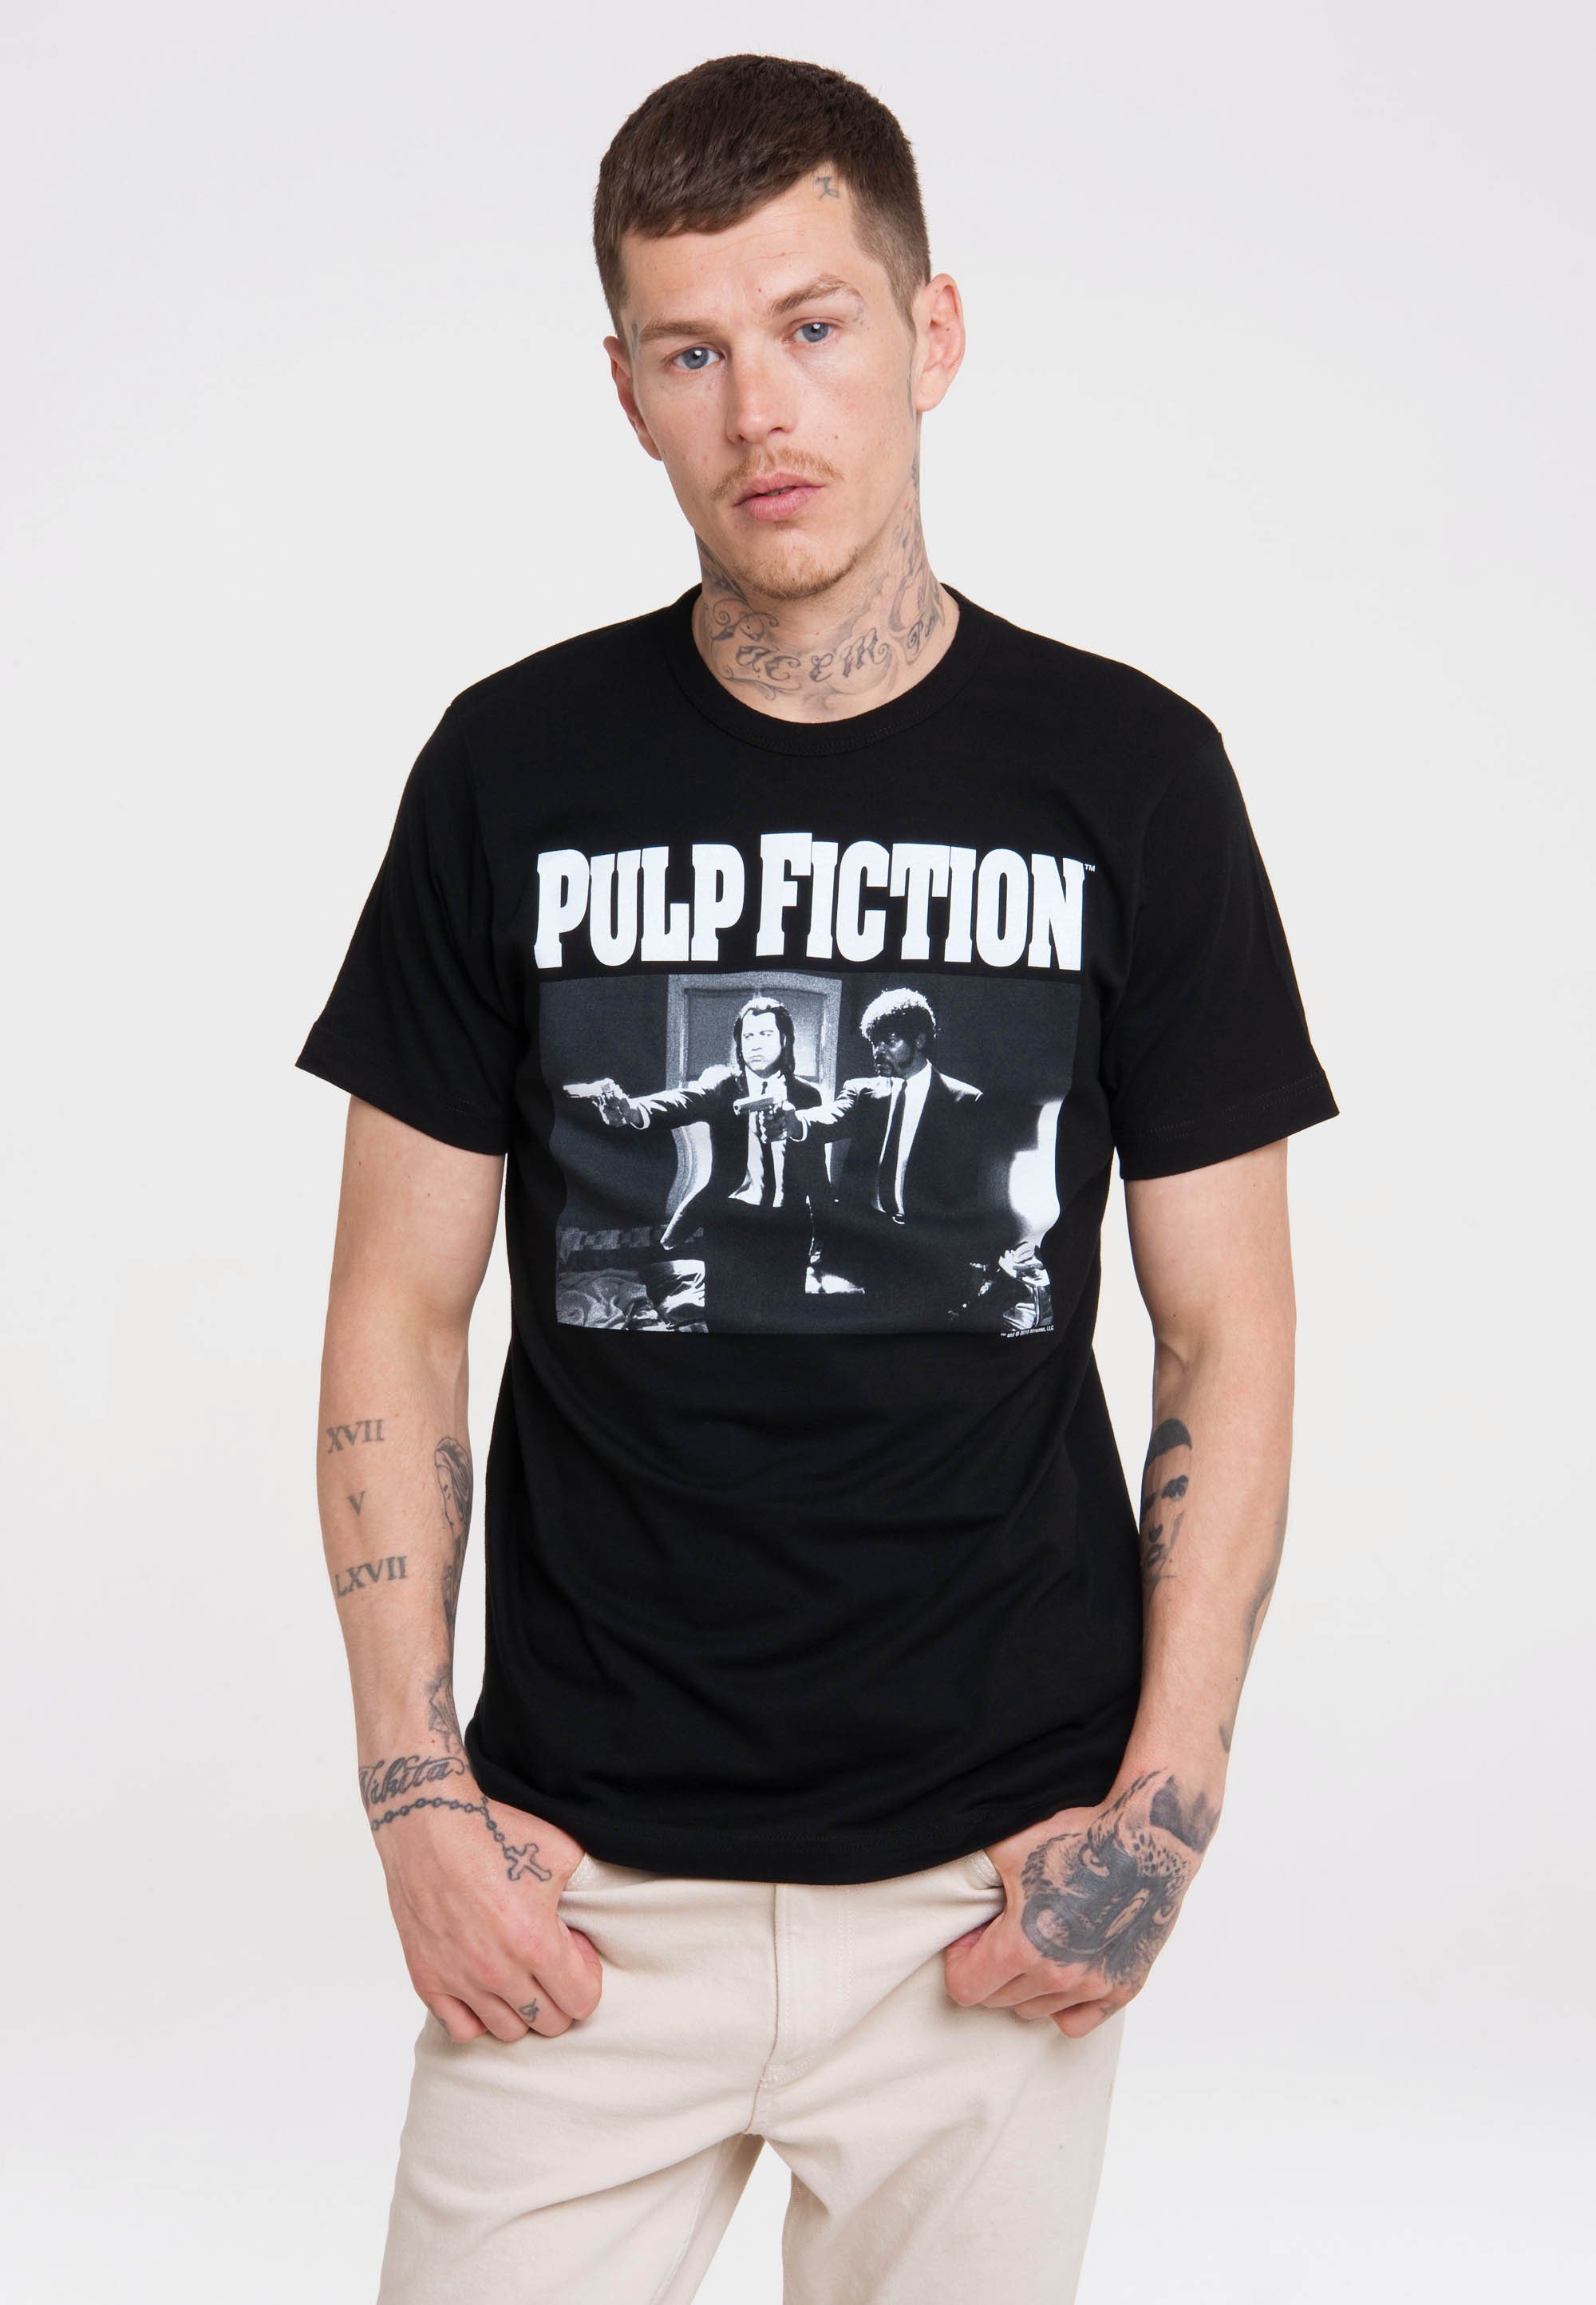 Fiction T-Shirt mit Pulp Front-Print lässigem LOGOSHIRT